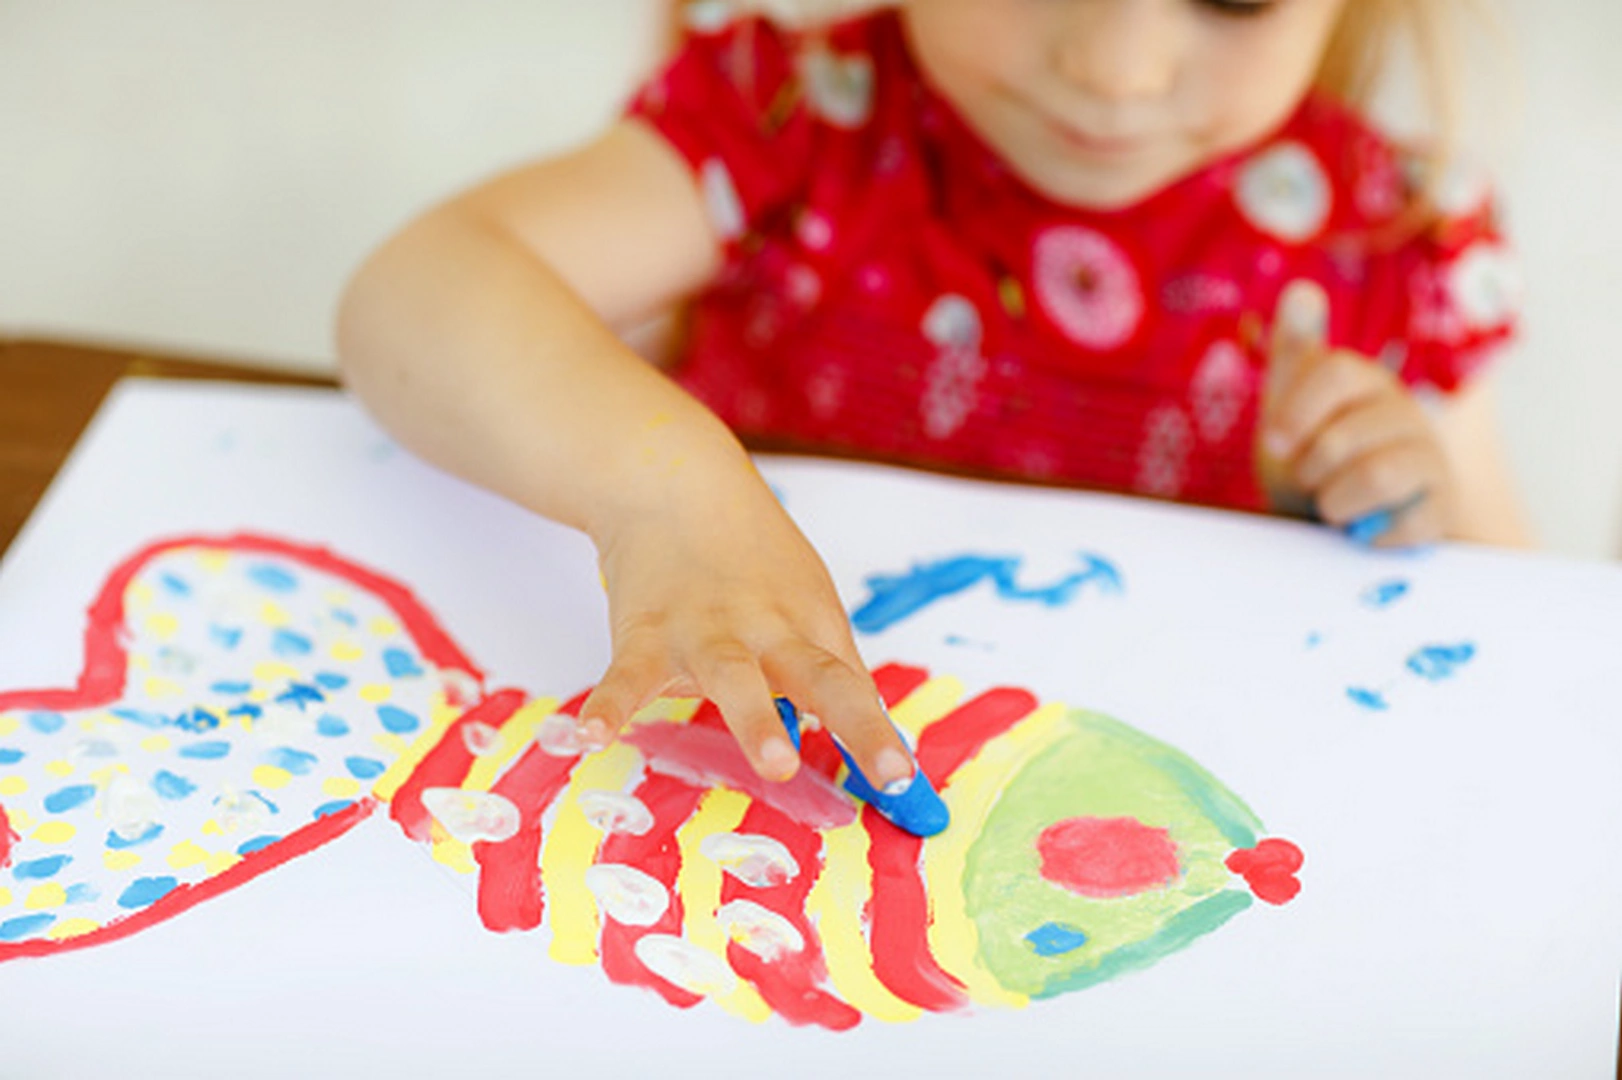 علت علاقه زیاد کودک به نقاشی از نظر روانشناسی